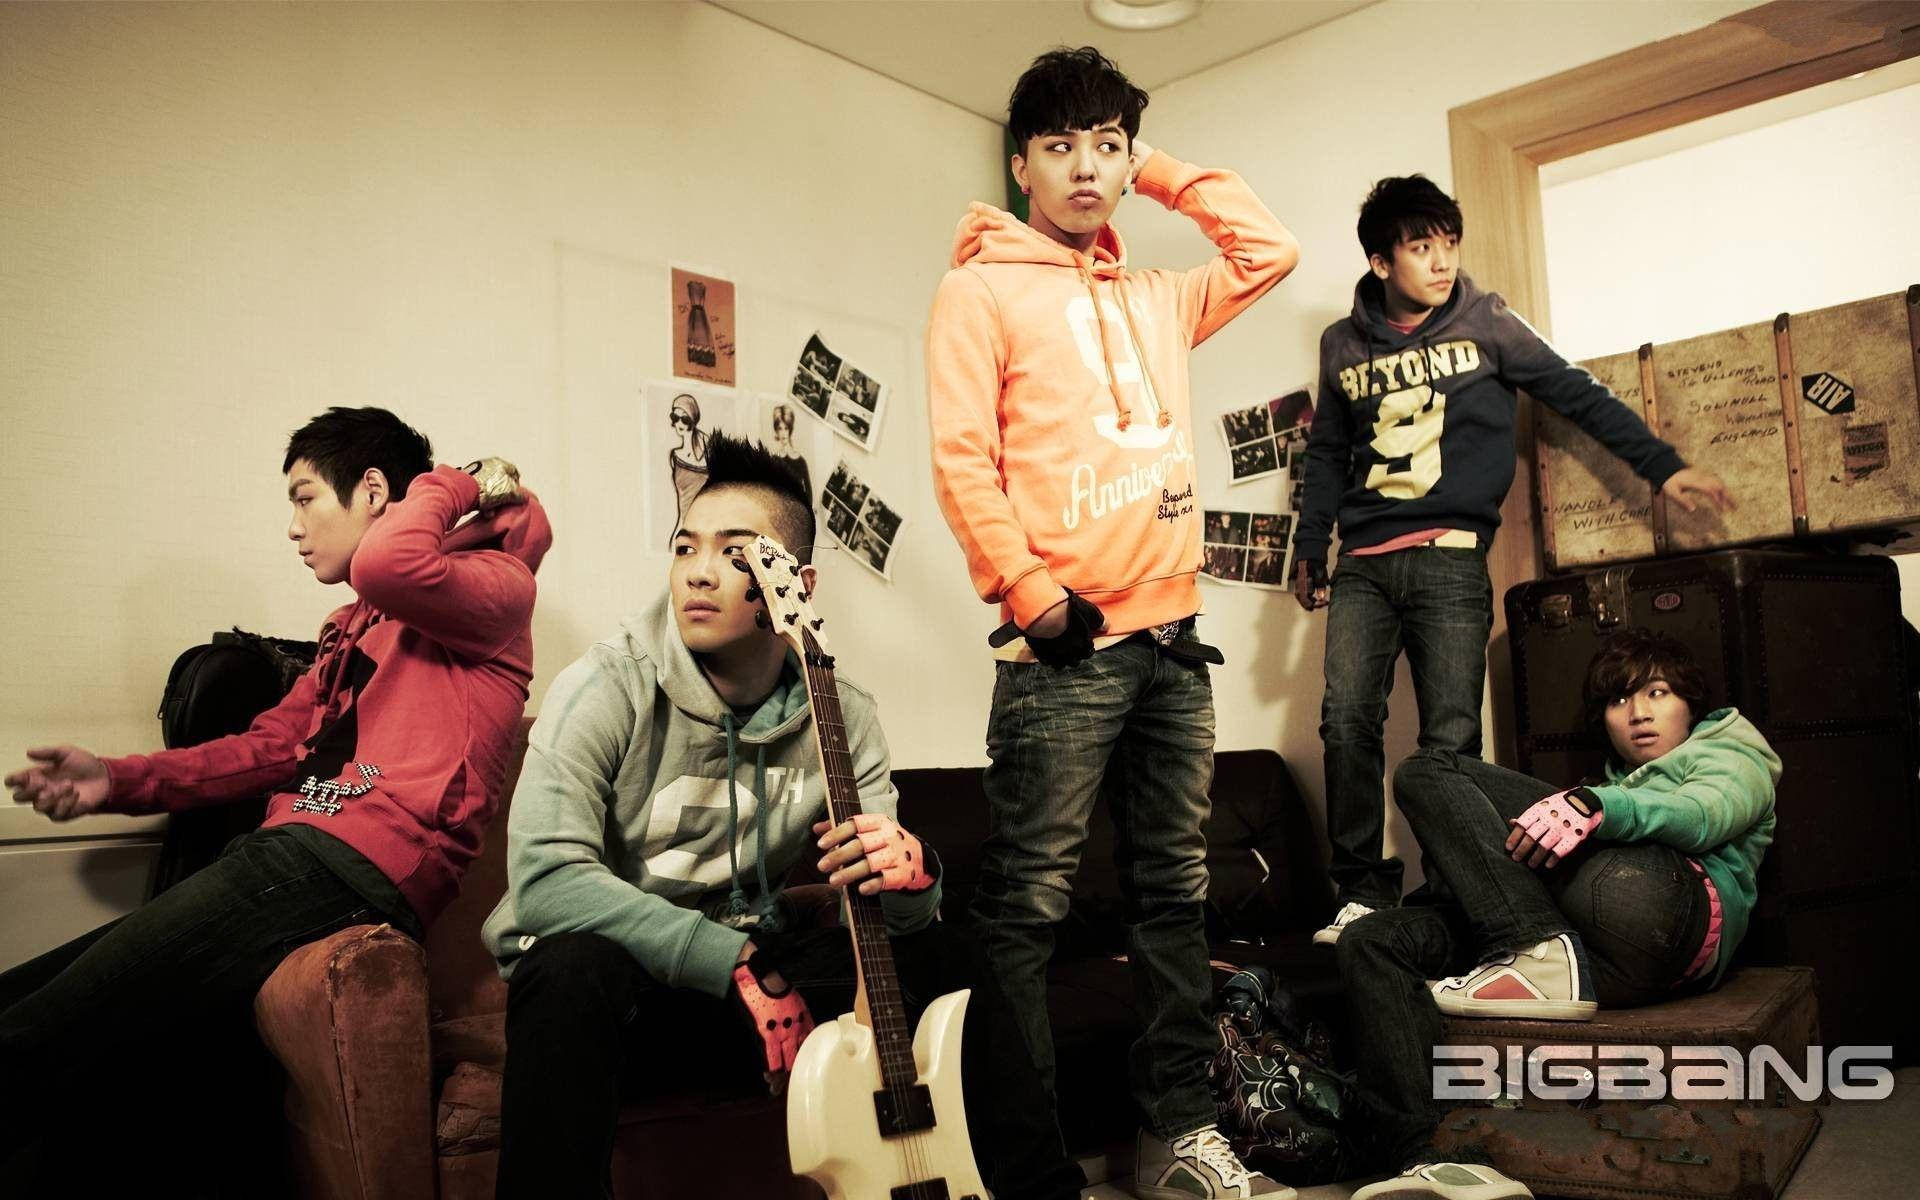 Bigbang Boy Band Poster